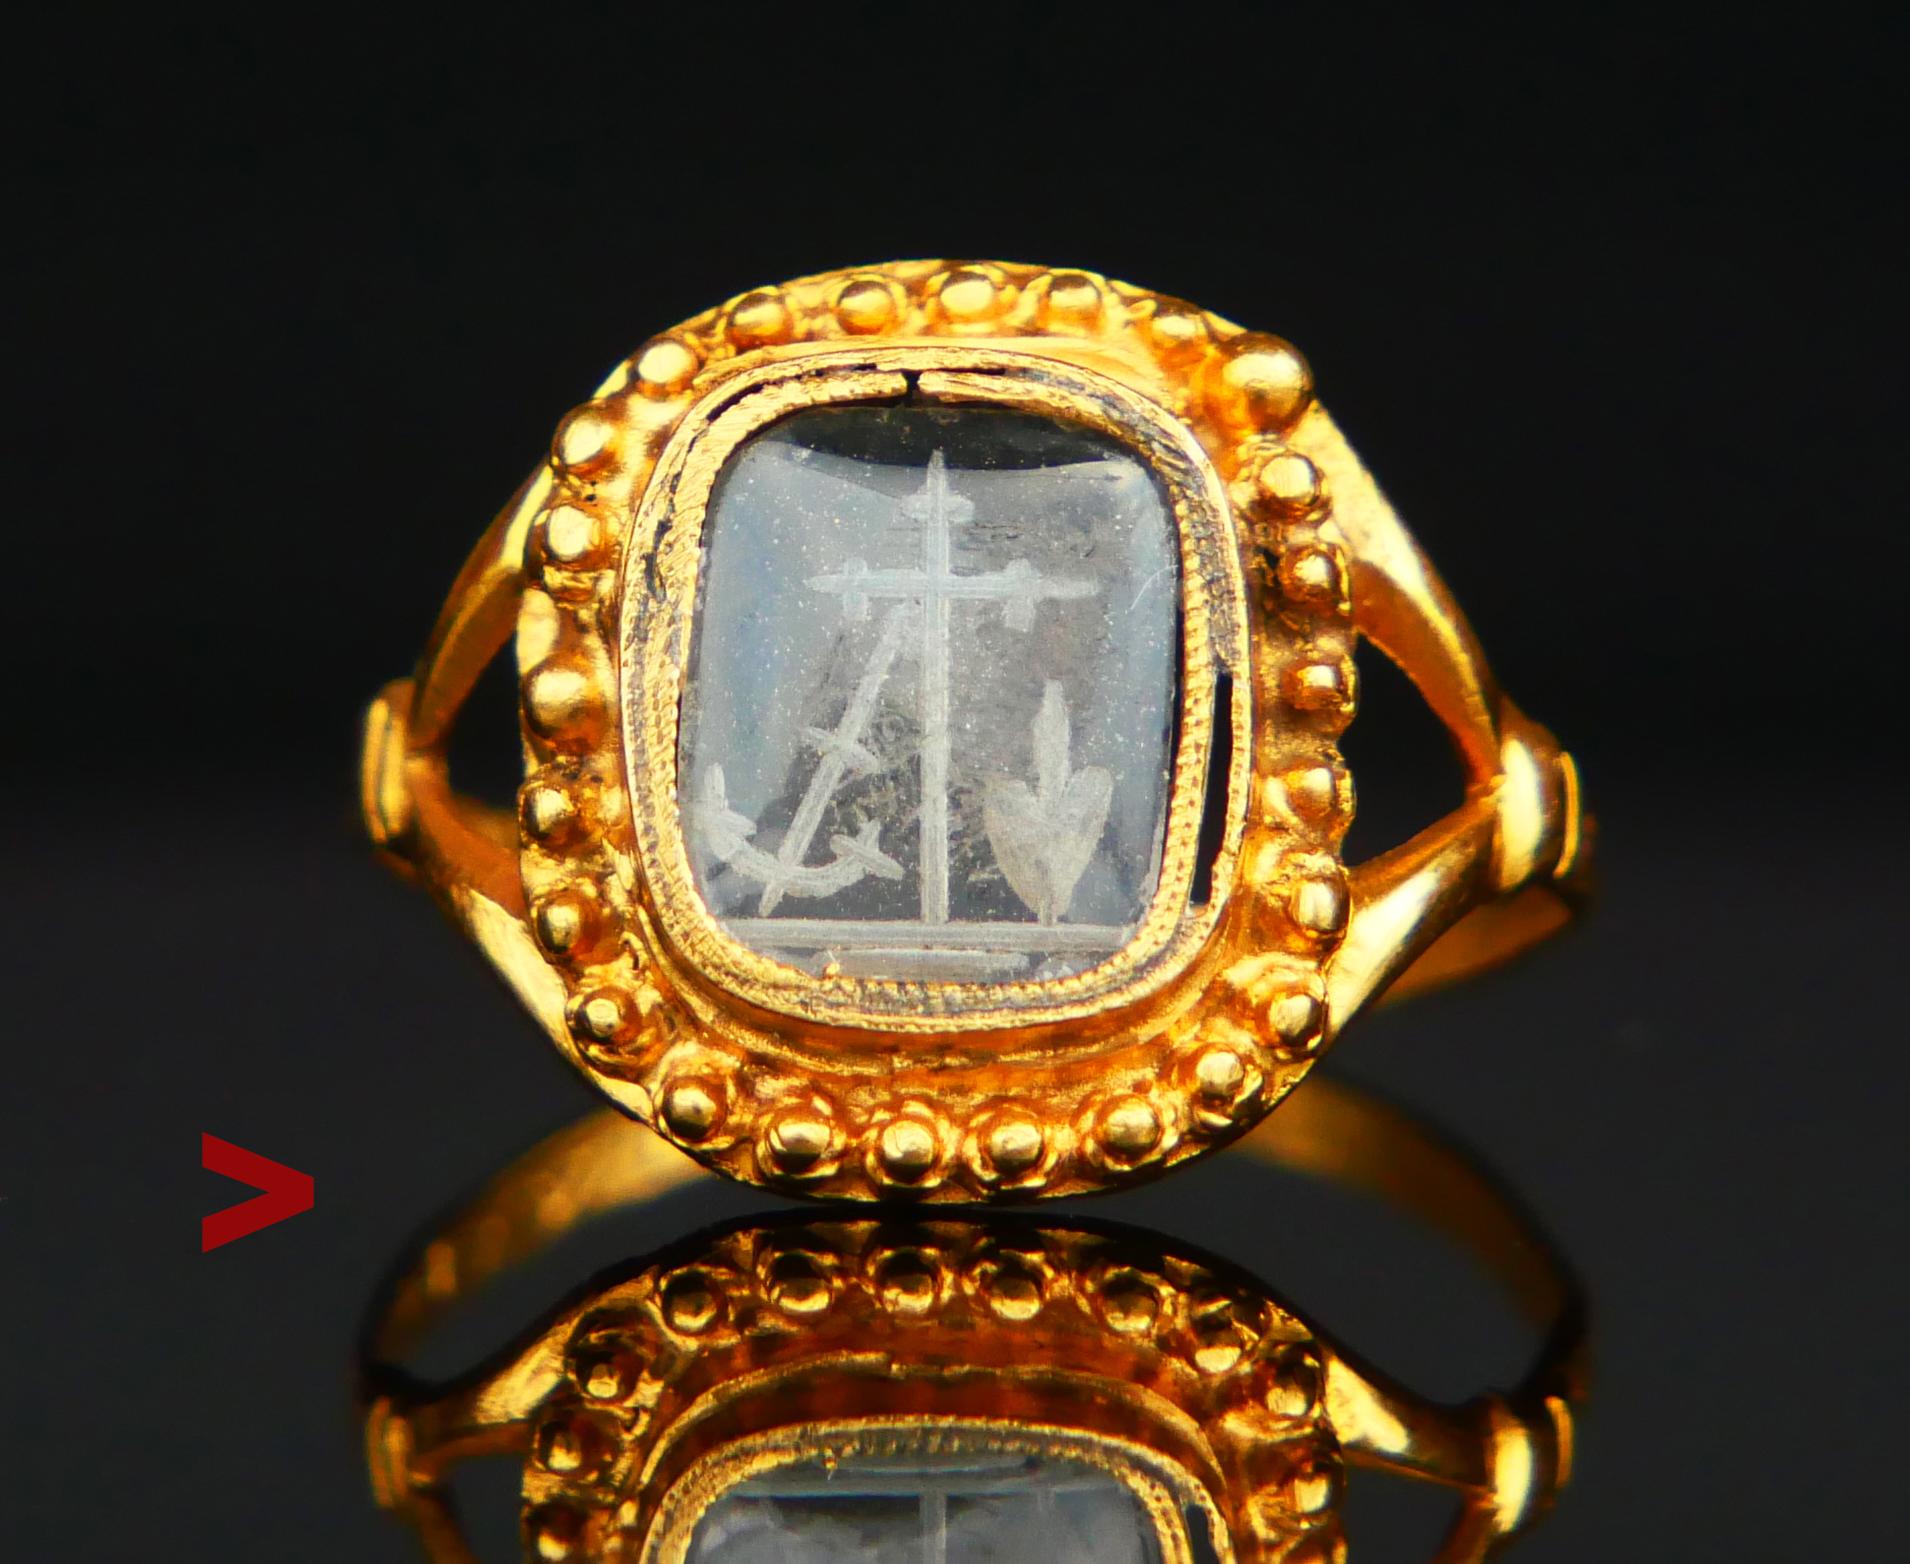 Magnifique chevalière en or jaune 18 carats, gravée en creux à la main de symboles de foi, d'espoir et d'amour sur une pâte de verre convexe de 8,3 mm x 7,3 mm x 1,5 mm de profondeur, avec des détails délicats et miniatures qui donnent une